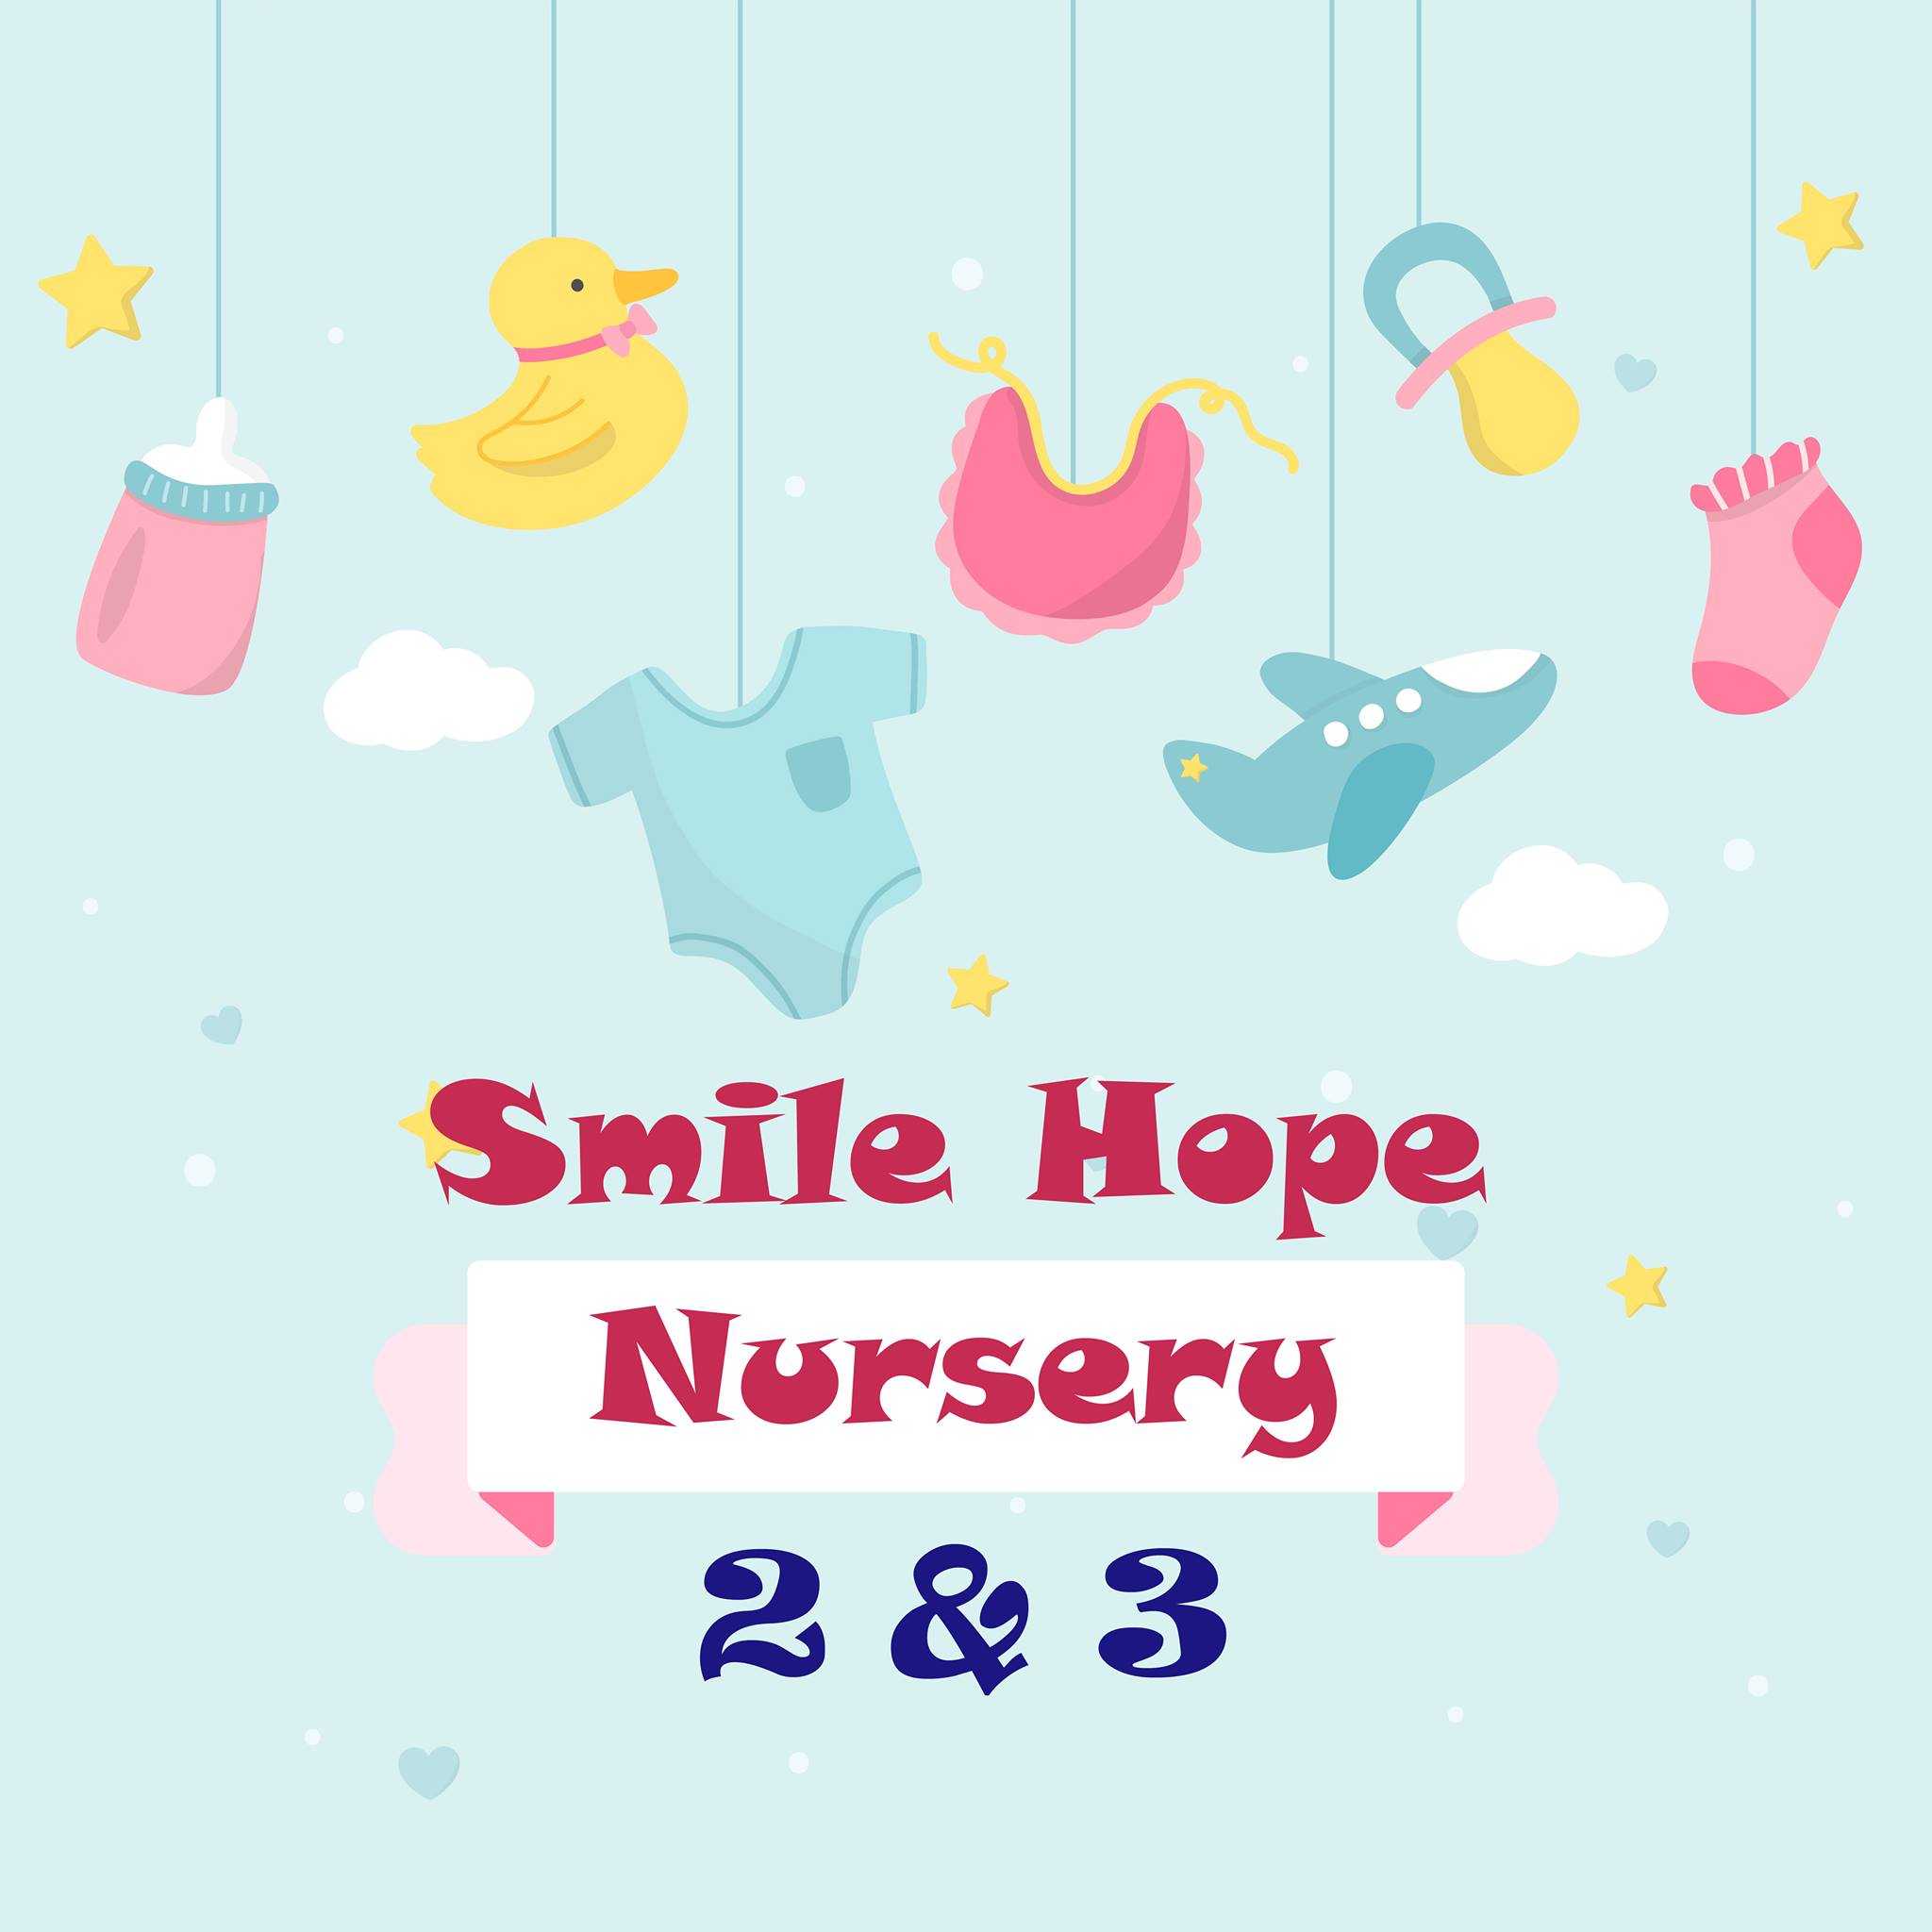 Smile hope nursery 2 & 3